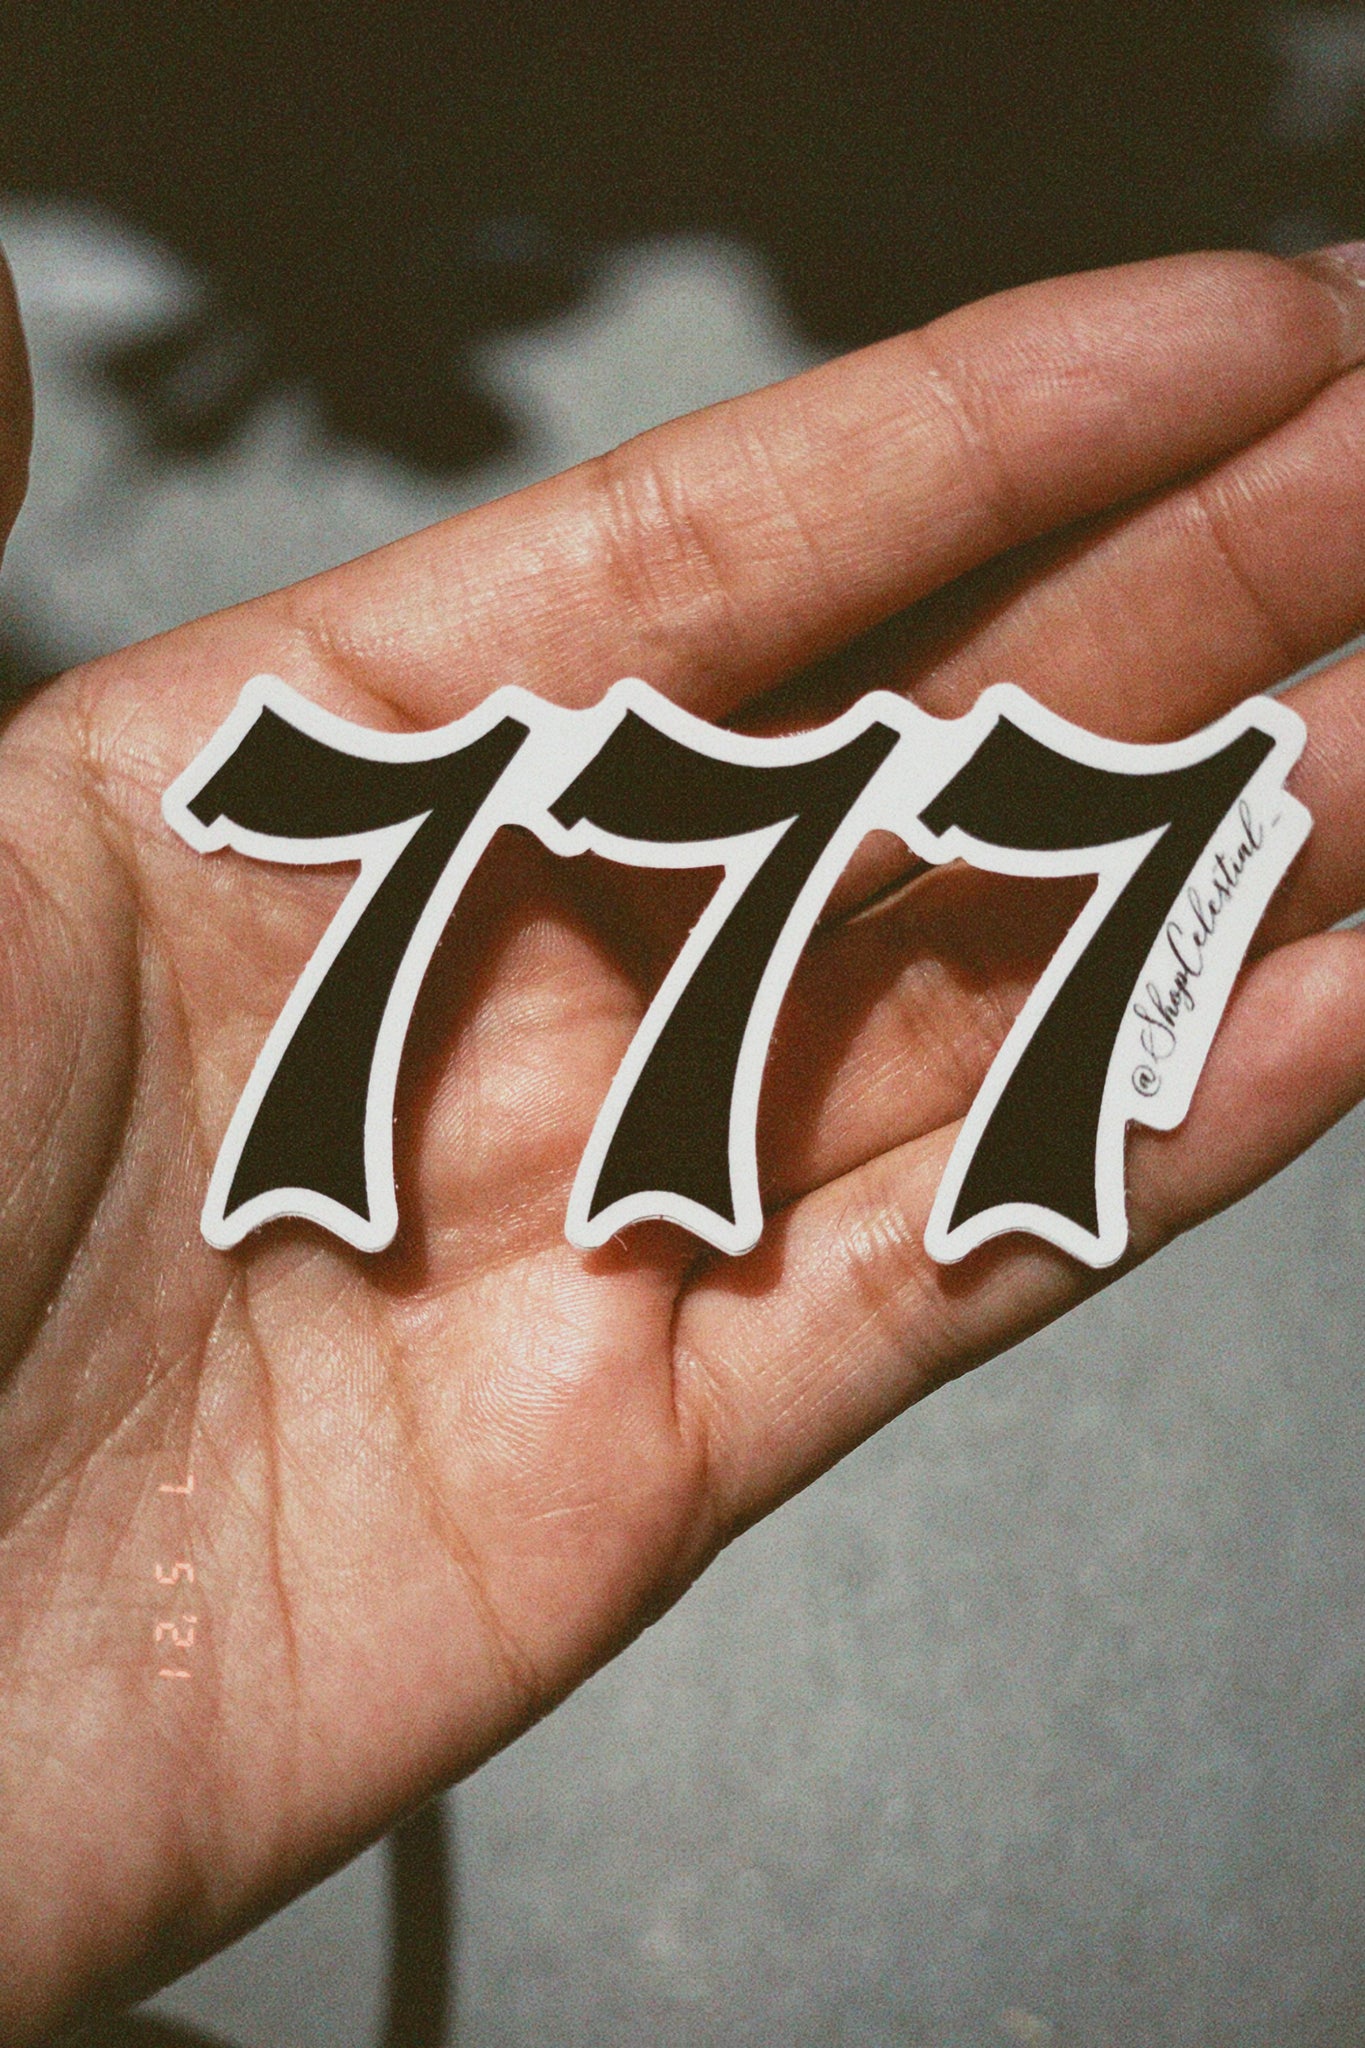 777 Angel Number Sticker – Shop Celestial